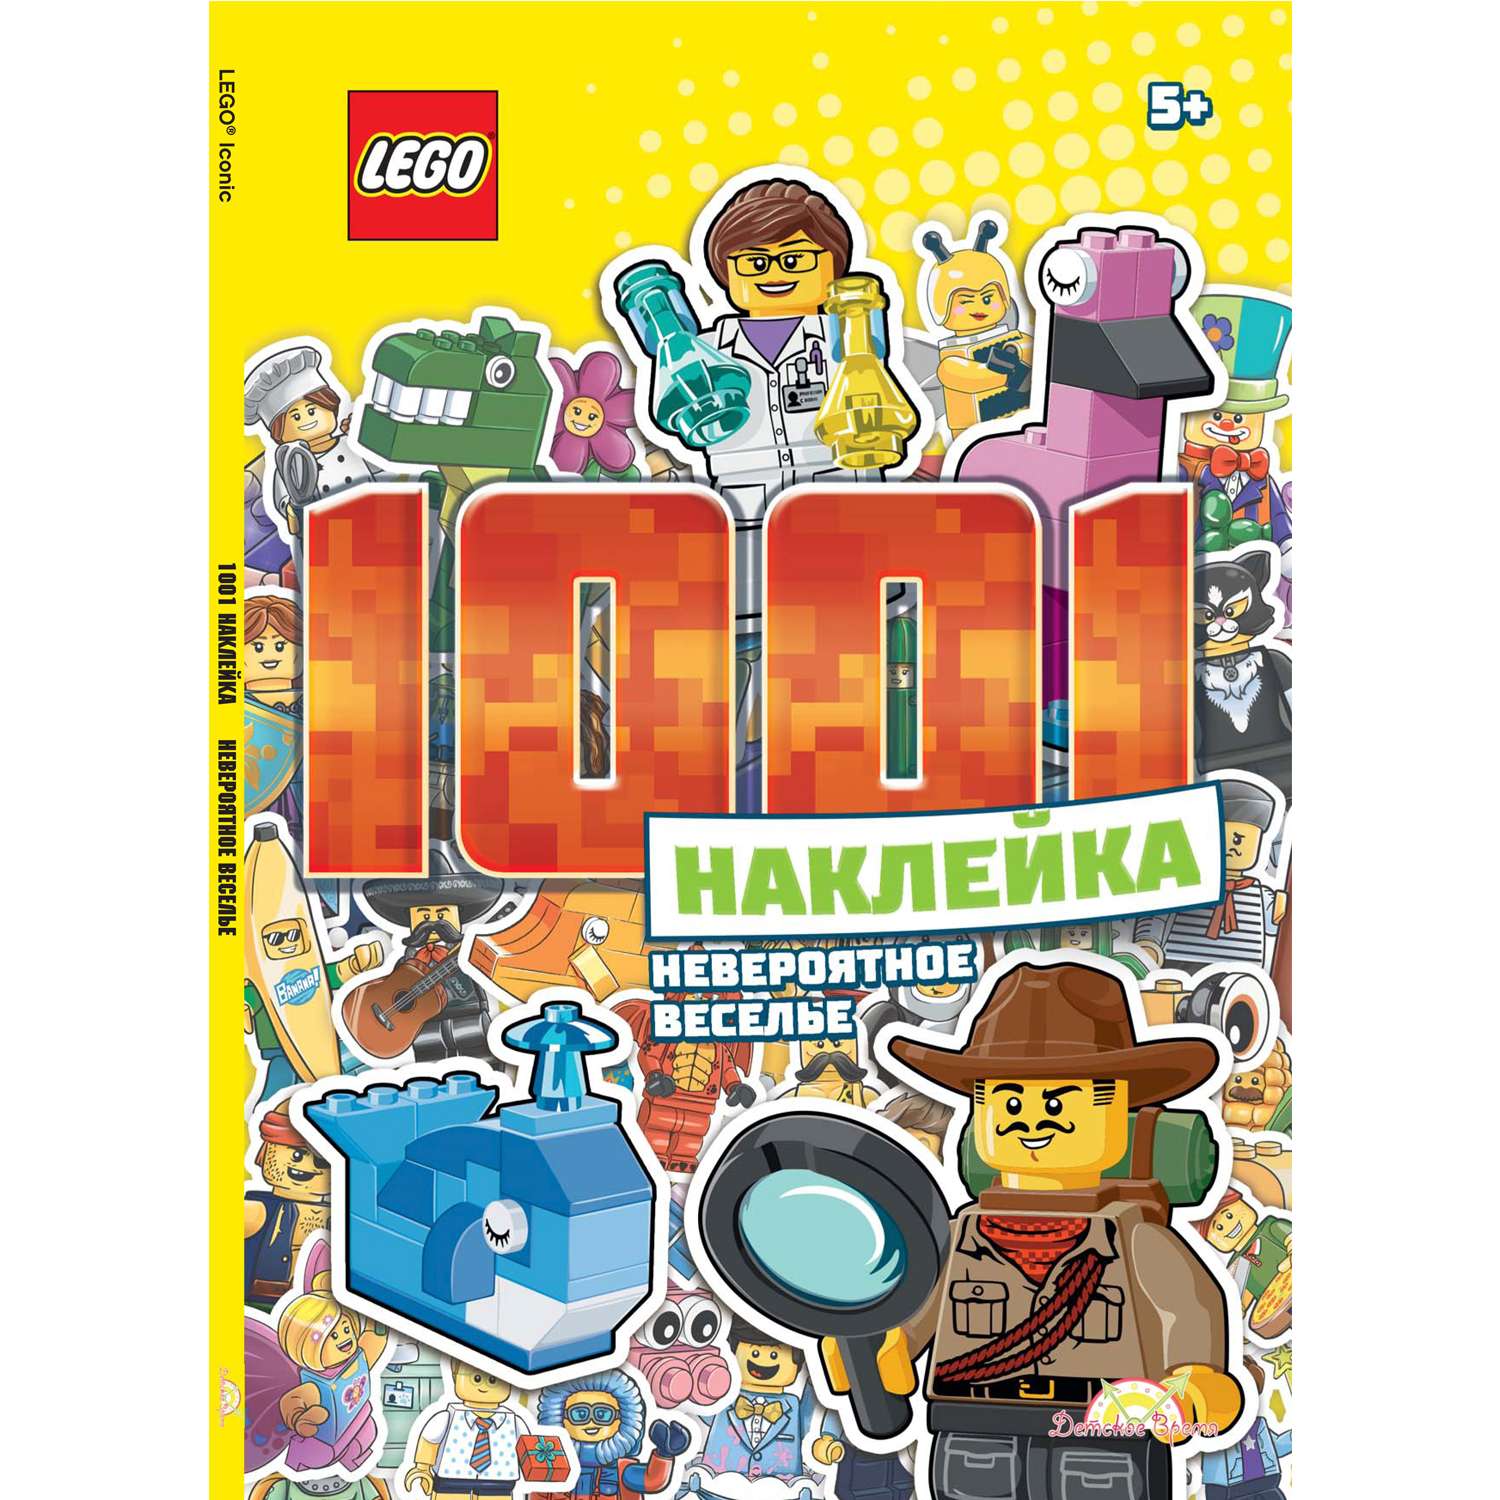 Книга LEGO Iconic - 1001 Наклейка. Невероятное веселье - фото 1